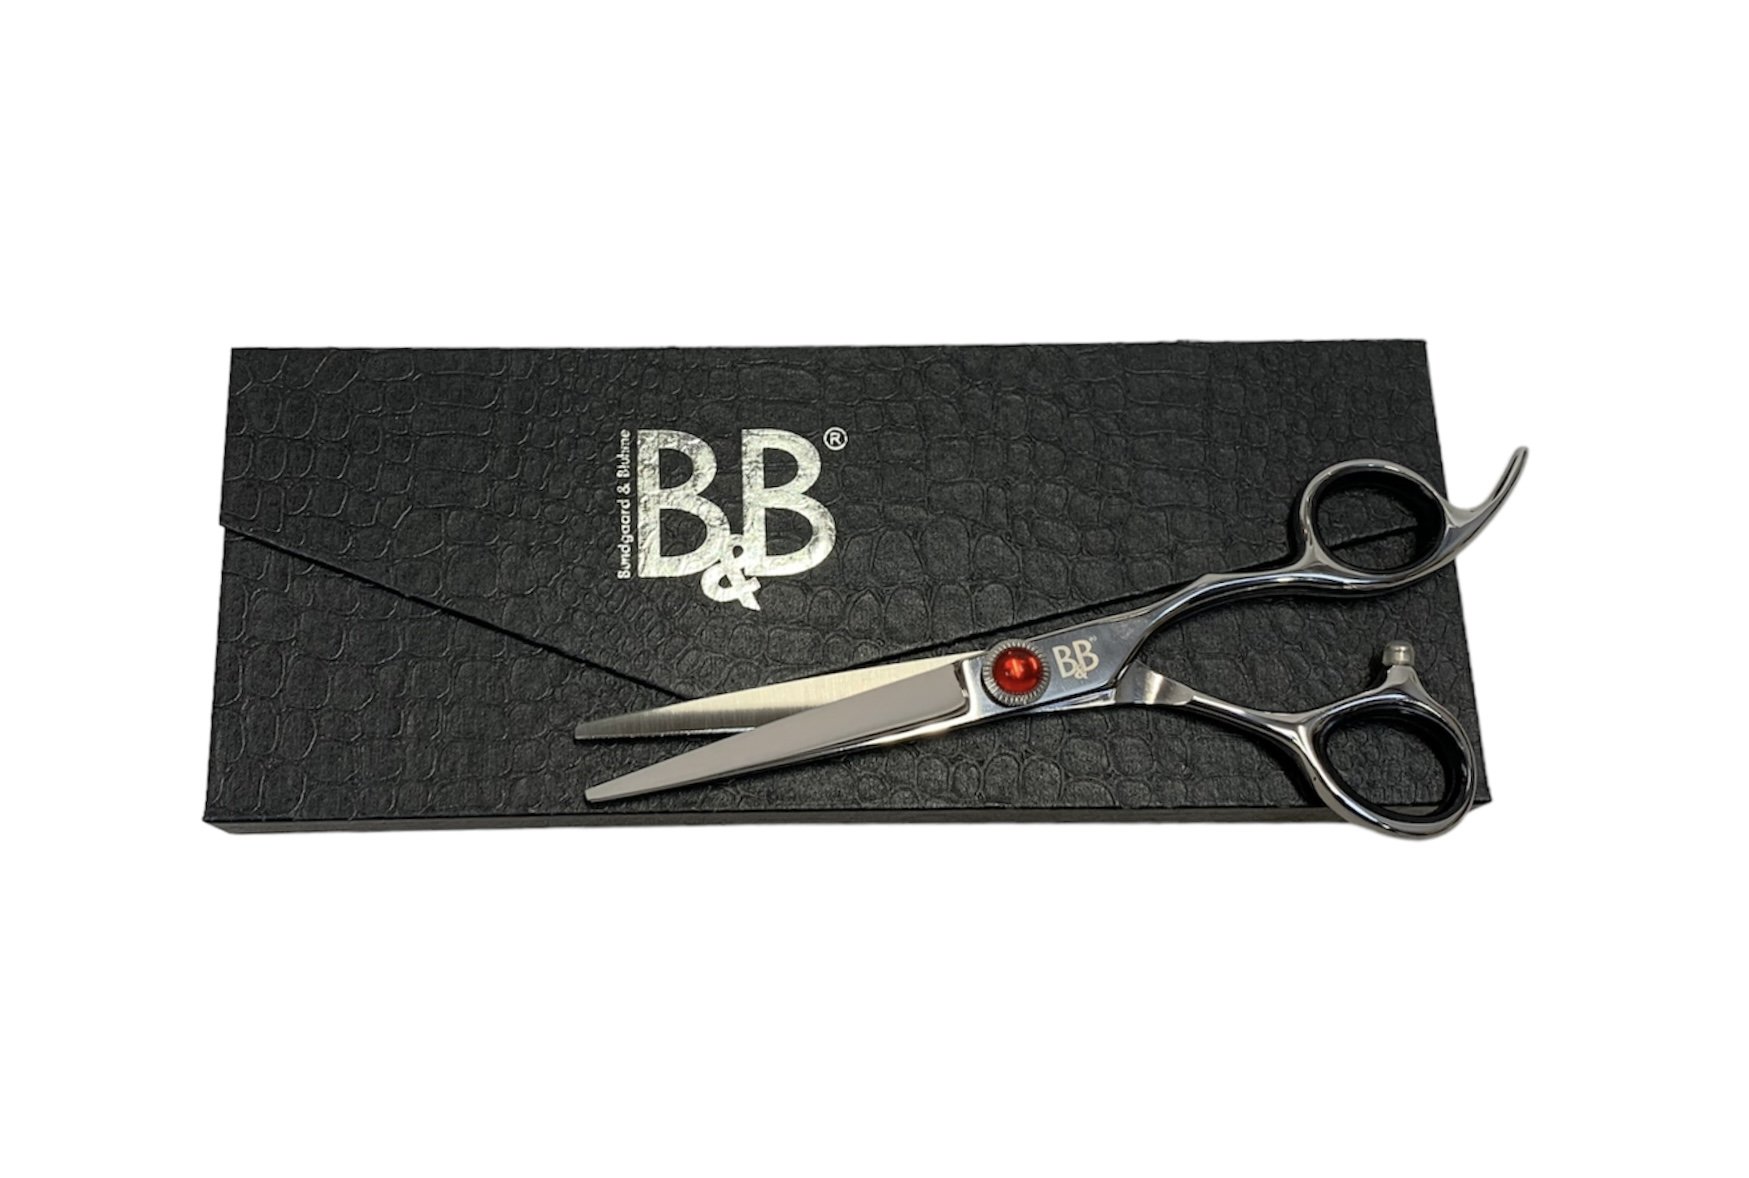 B&B - Professional grooming scissor 6" - (9108) - Kjæledyr og utstyr